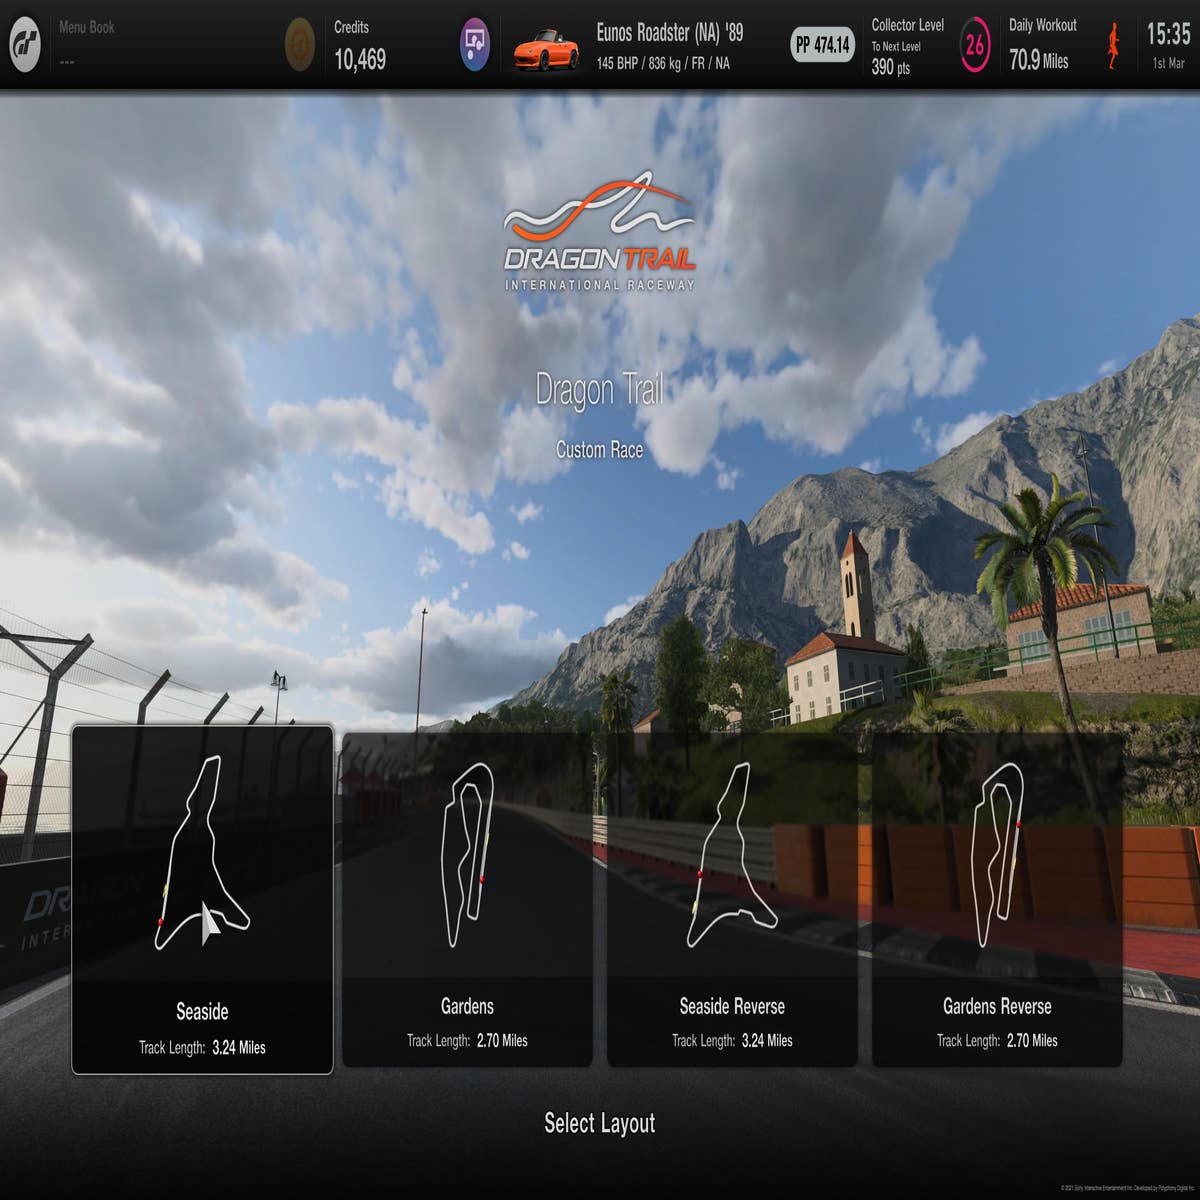 Gran Turismo 7 track list